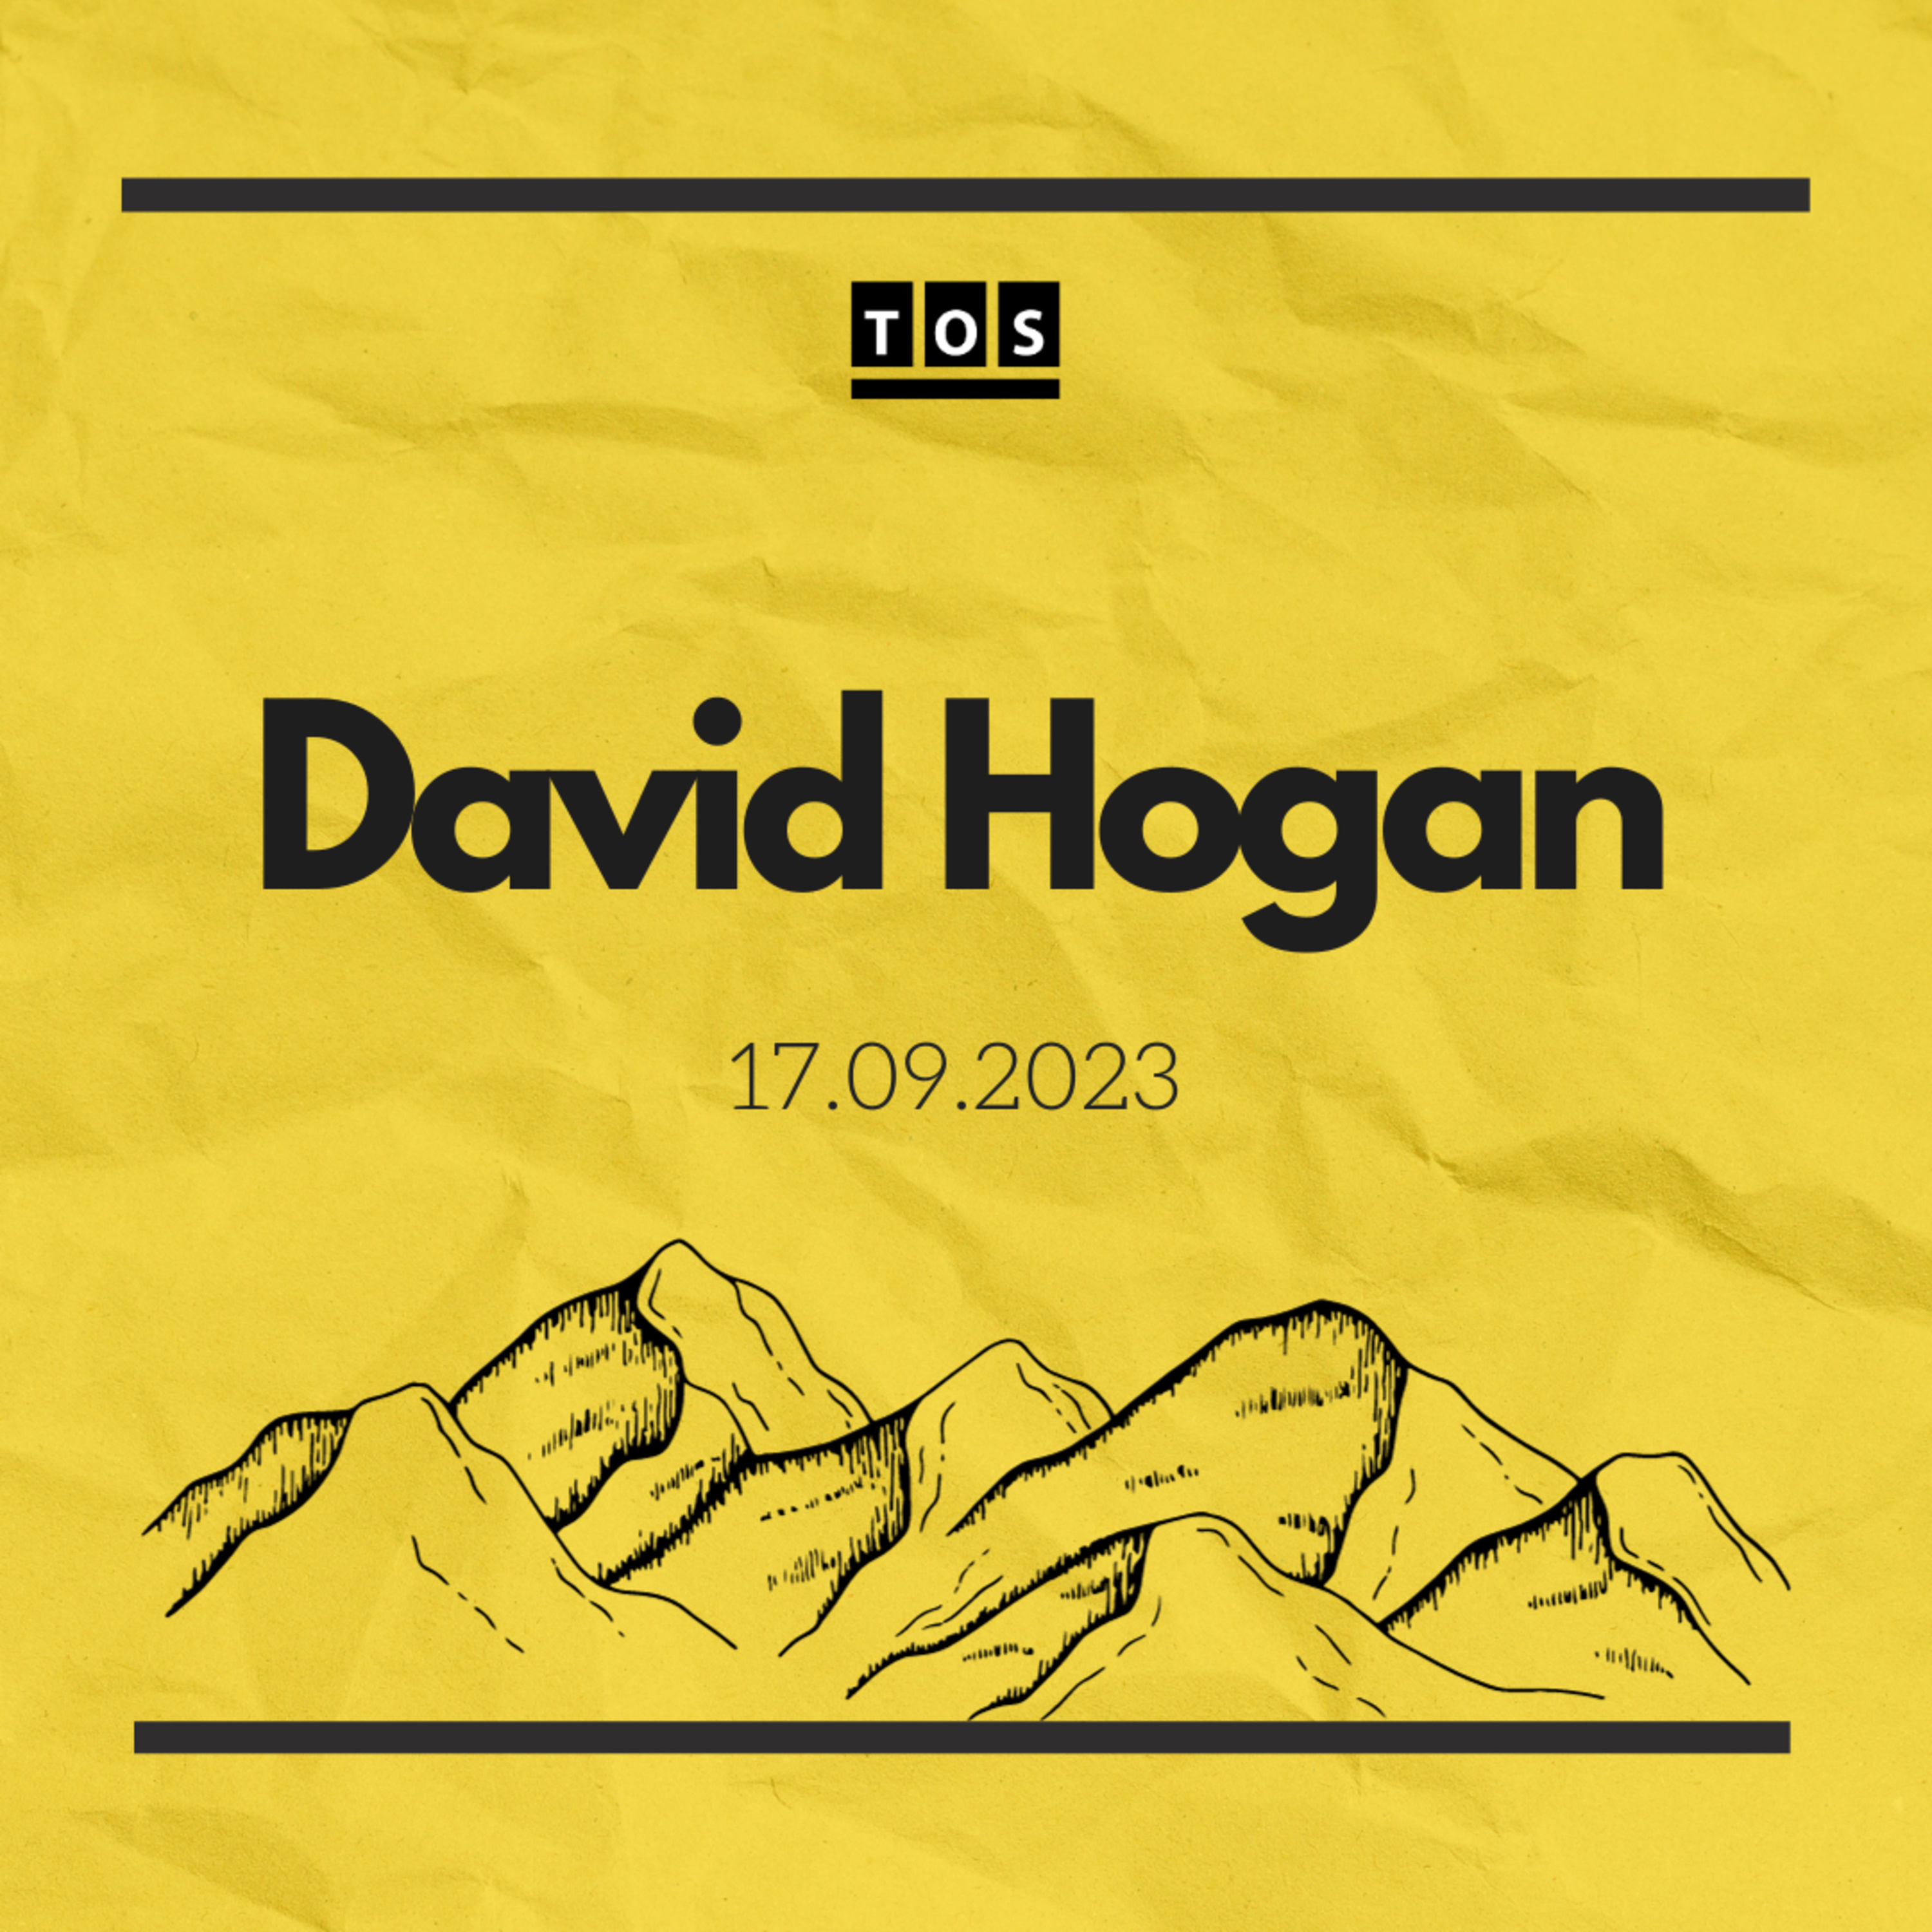 David Hogan - 17.09.2023 hero artwork